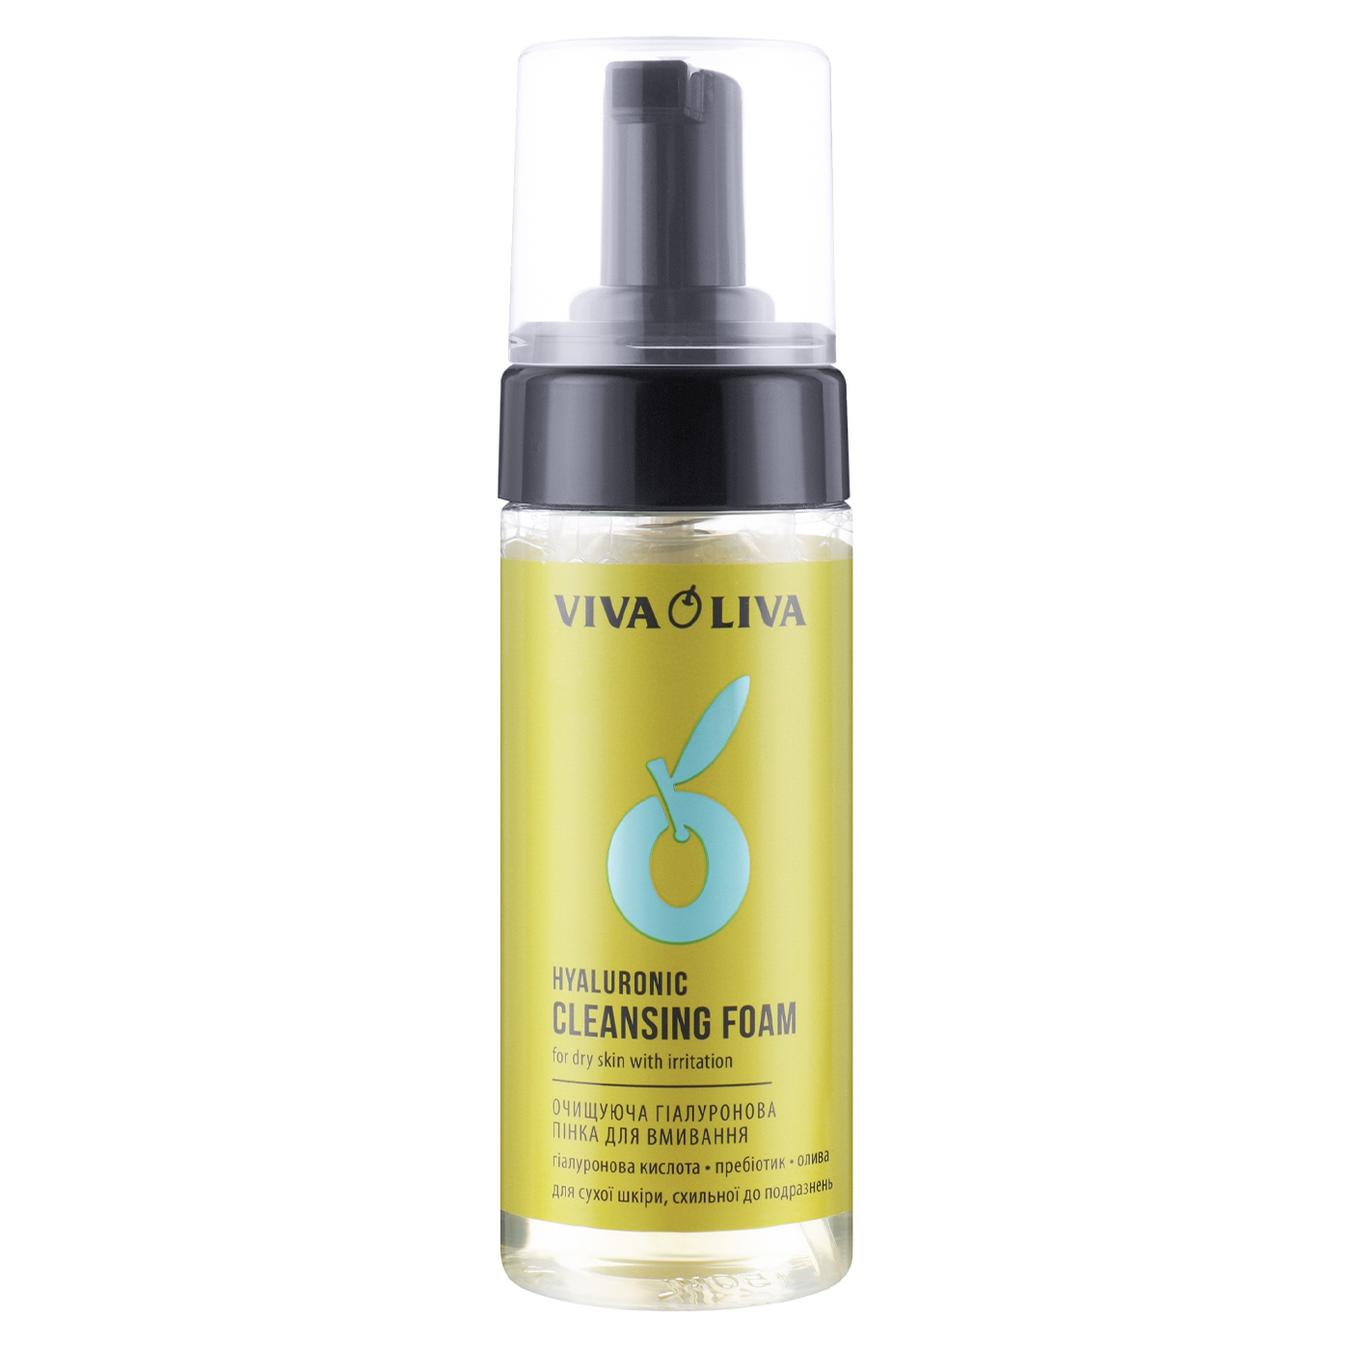 Пенка Viva oliva очищающая гиалуроновая для умывания 150мл